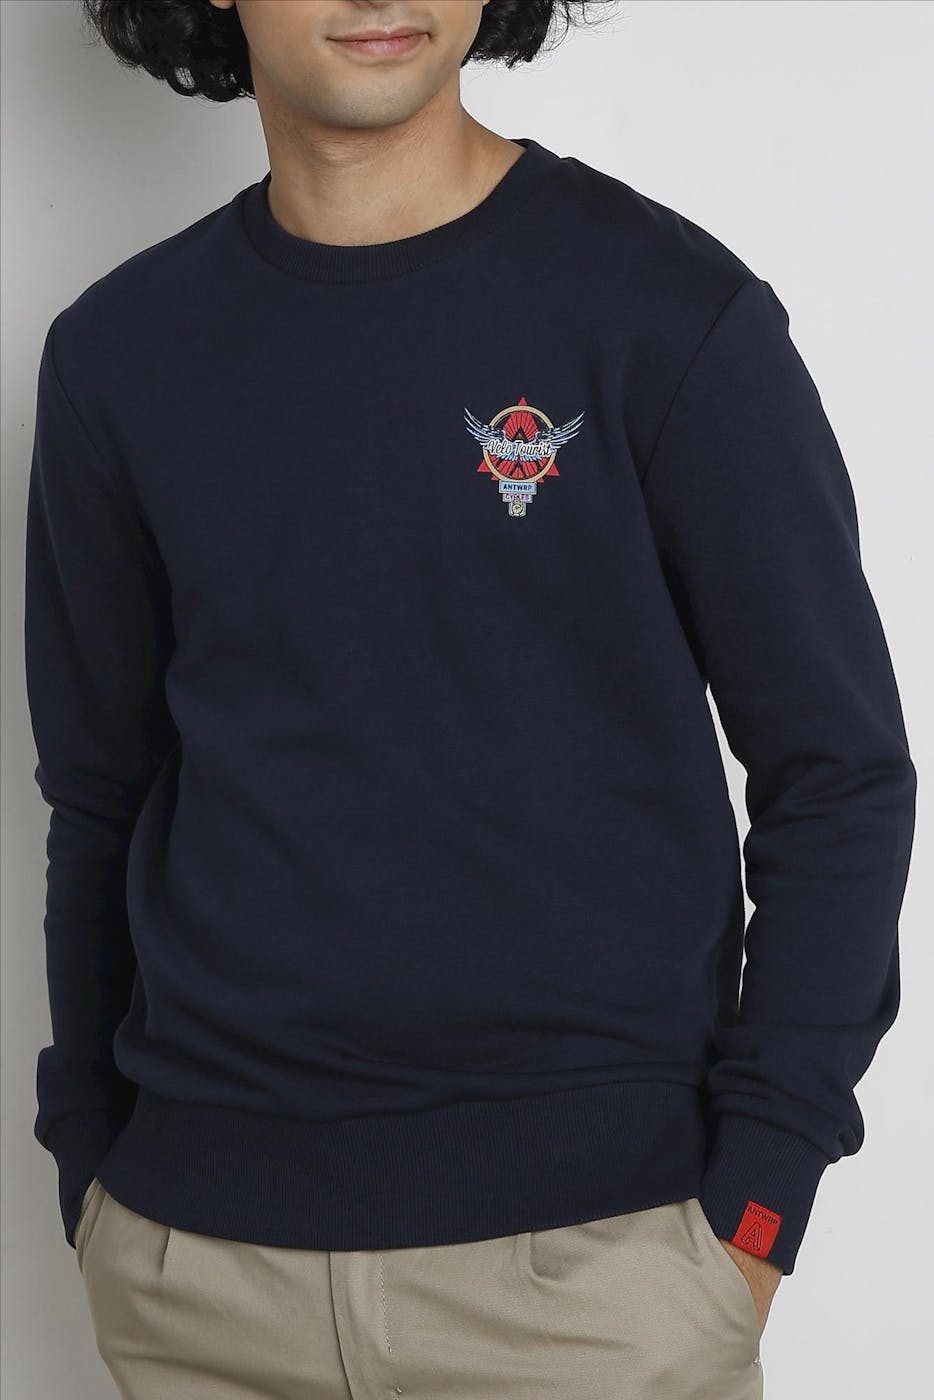 Antwrp - Donkerblauwe Velo Tourist Emblem Sweater